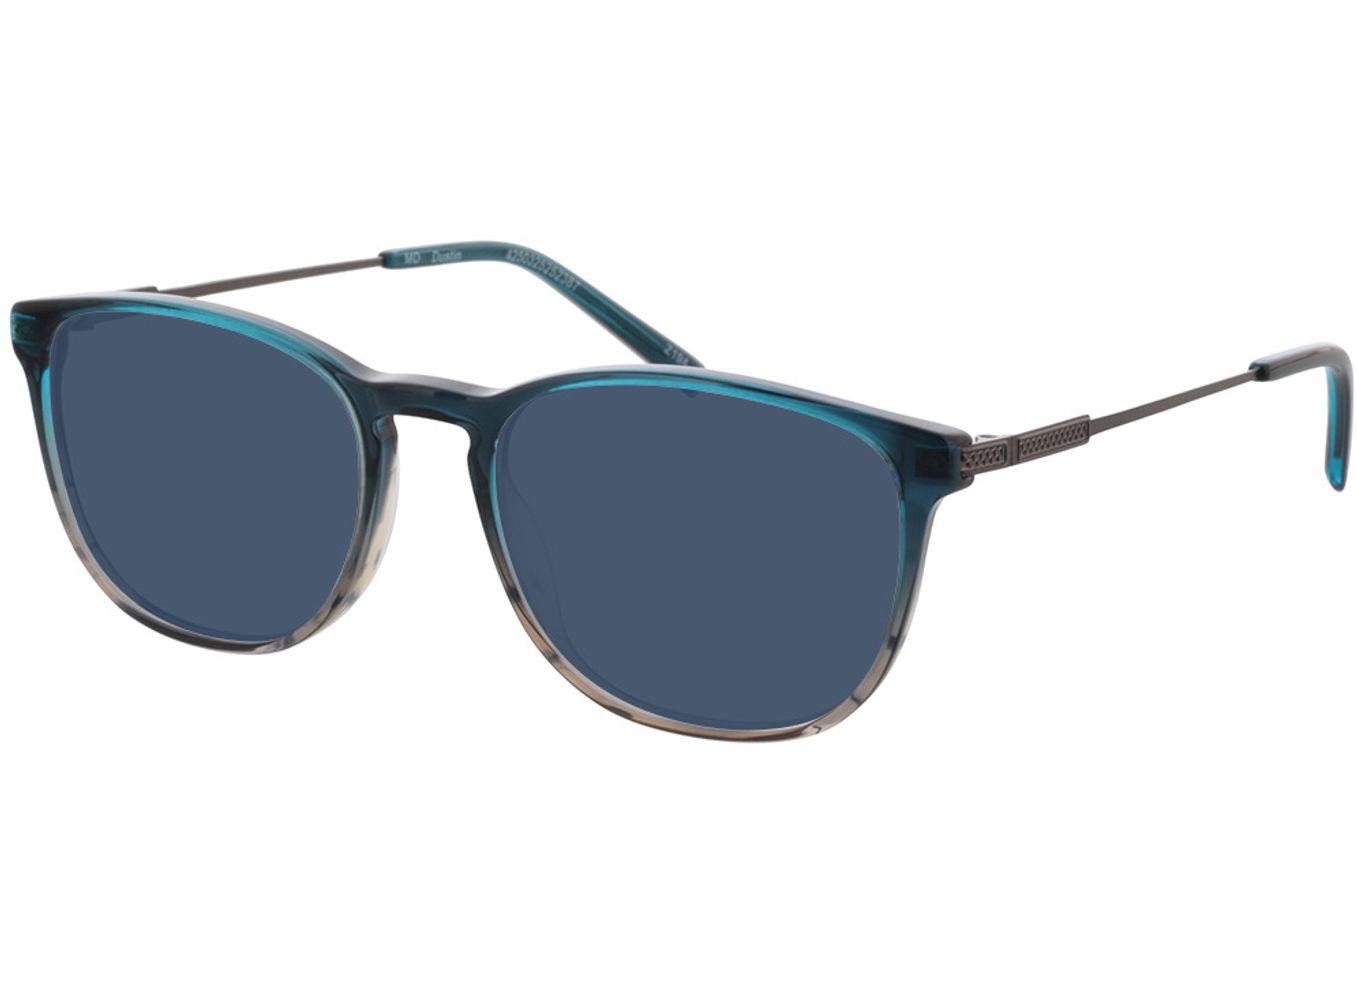 Dustin - blau/anthrazit Sonnenbrille ohne Sehstärke, Vollrand, Eckig von Brille24 Collection